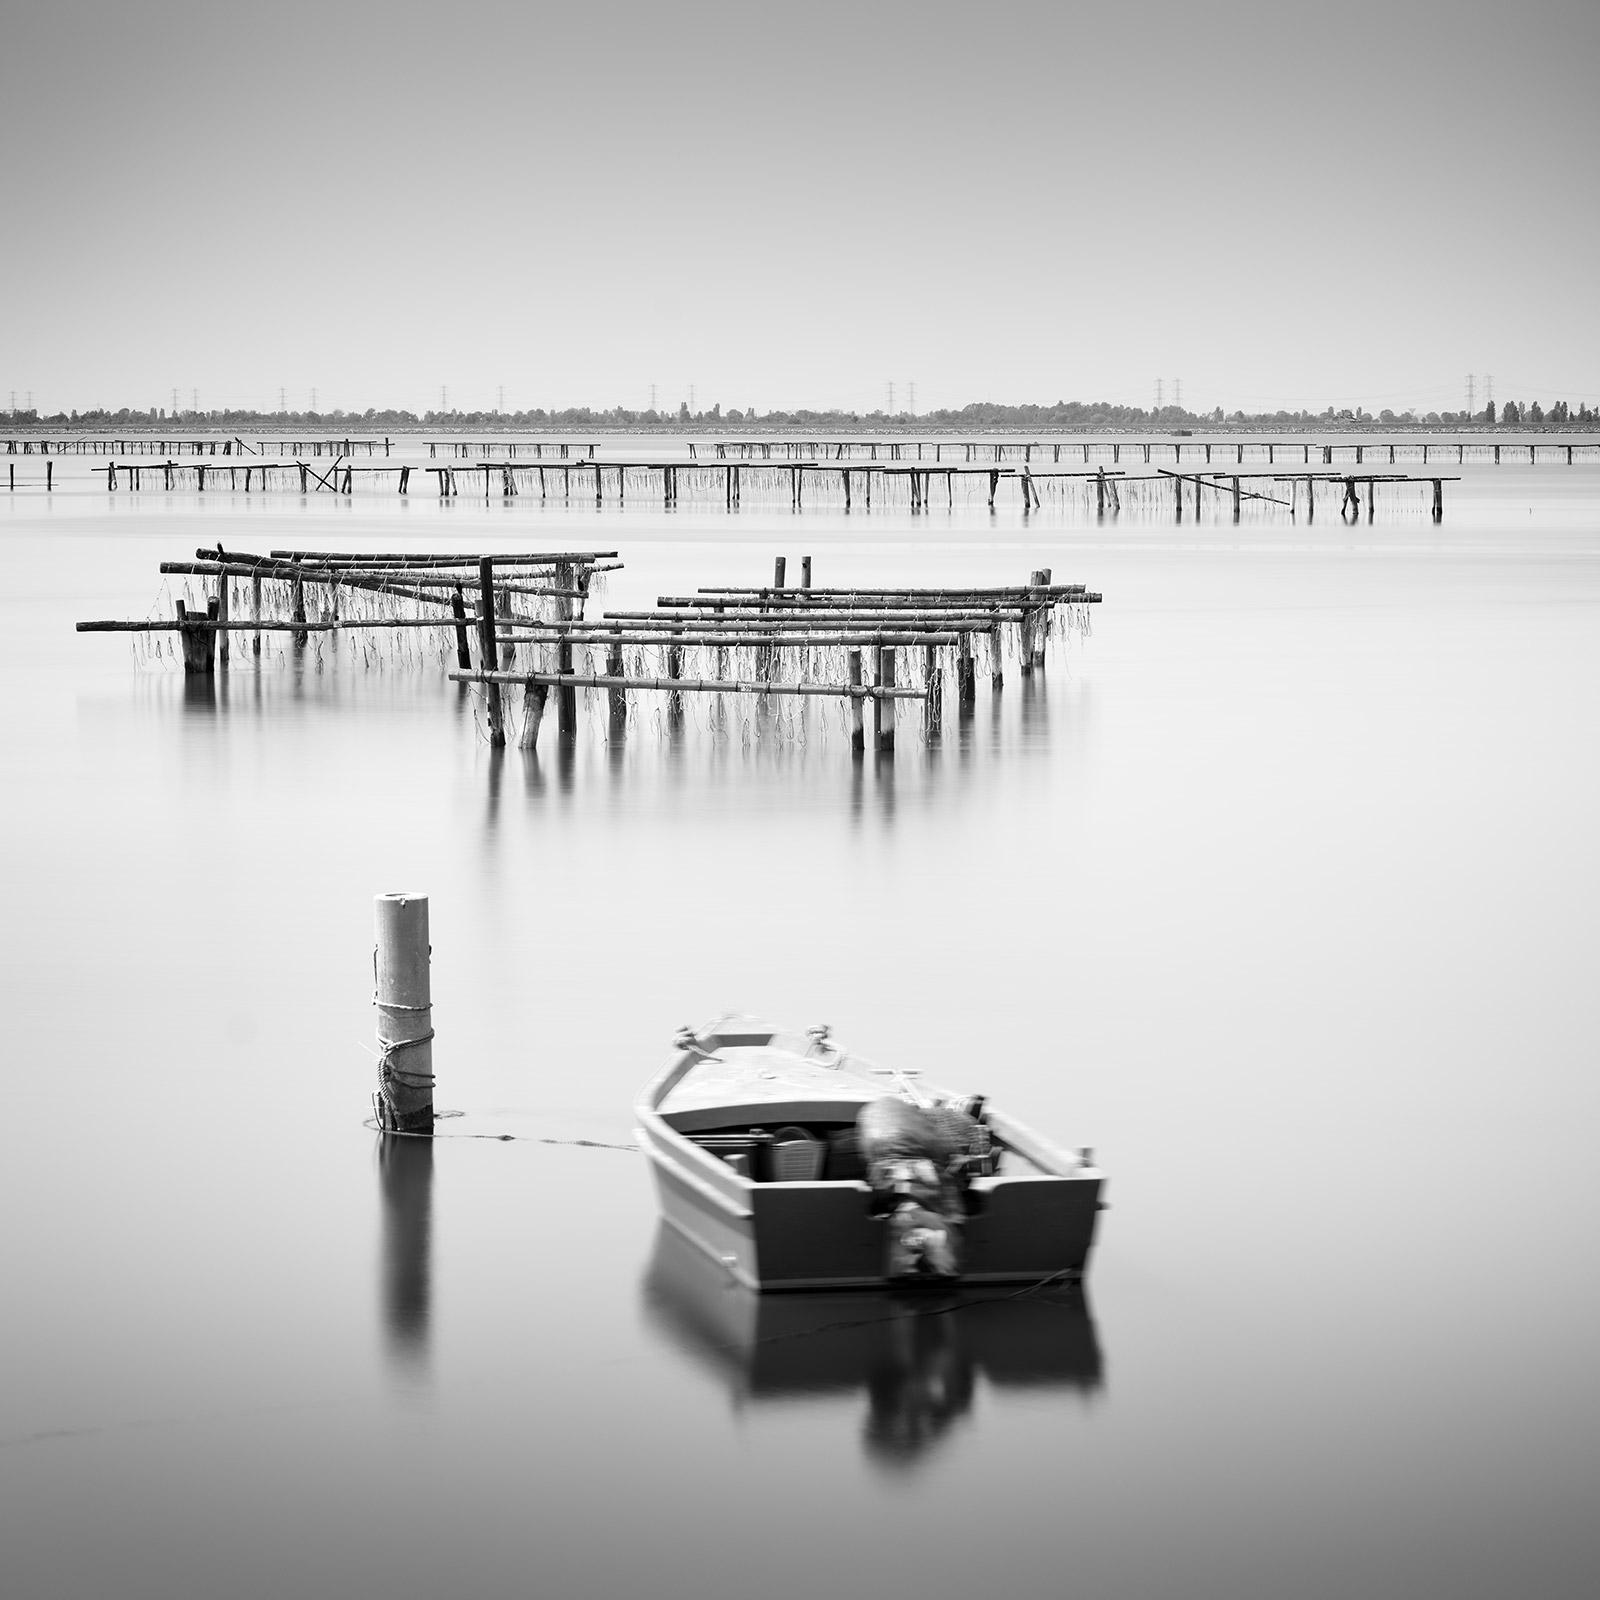 Black and White Photograph Gerald Berghammer - Structures d'aquaculture, bateau de pêche, longue exposition, noir et blanc, paysage